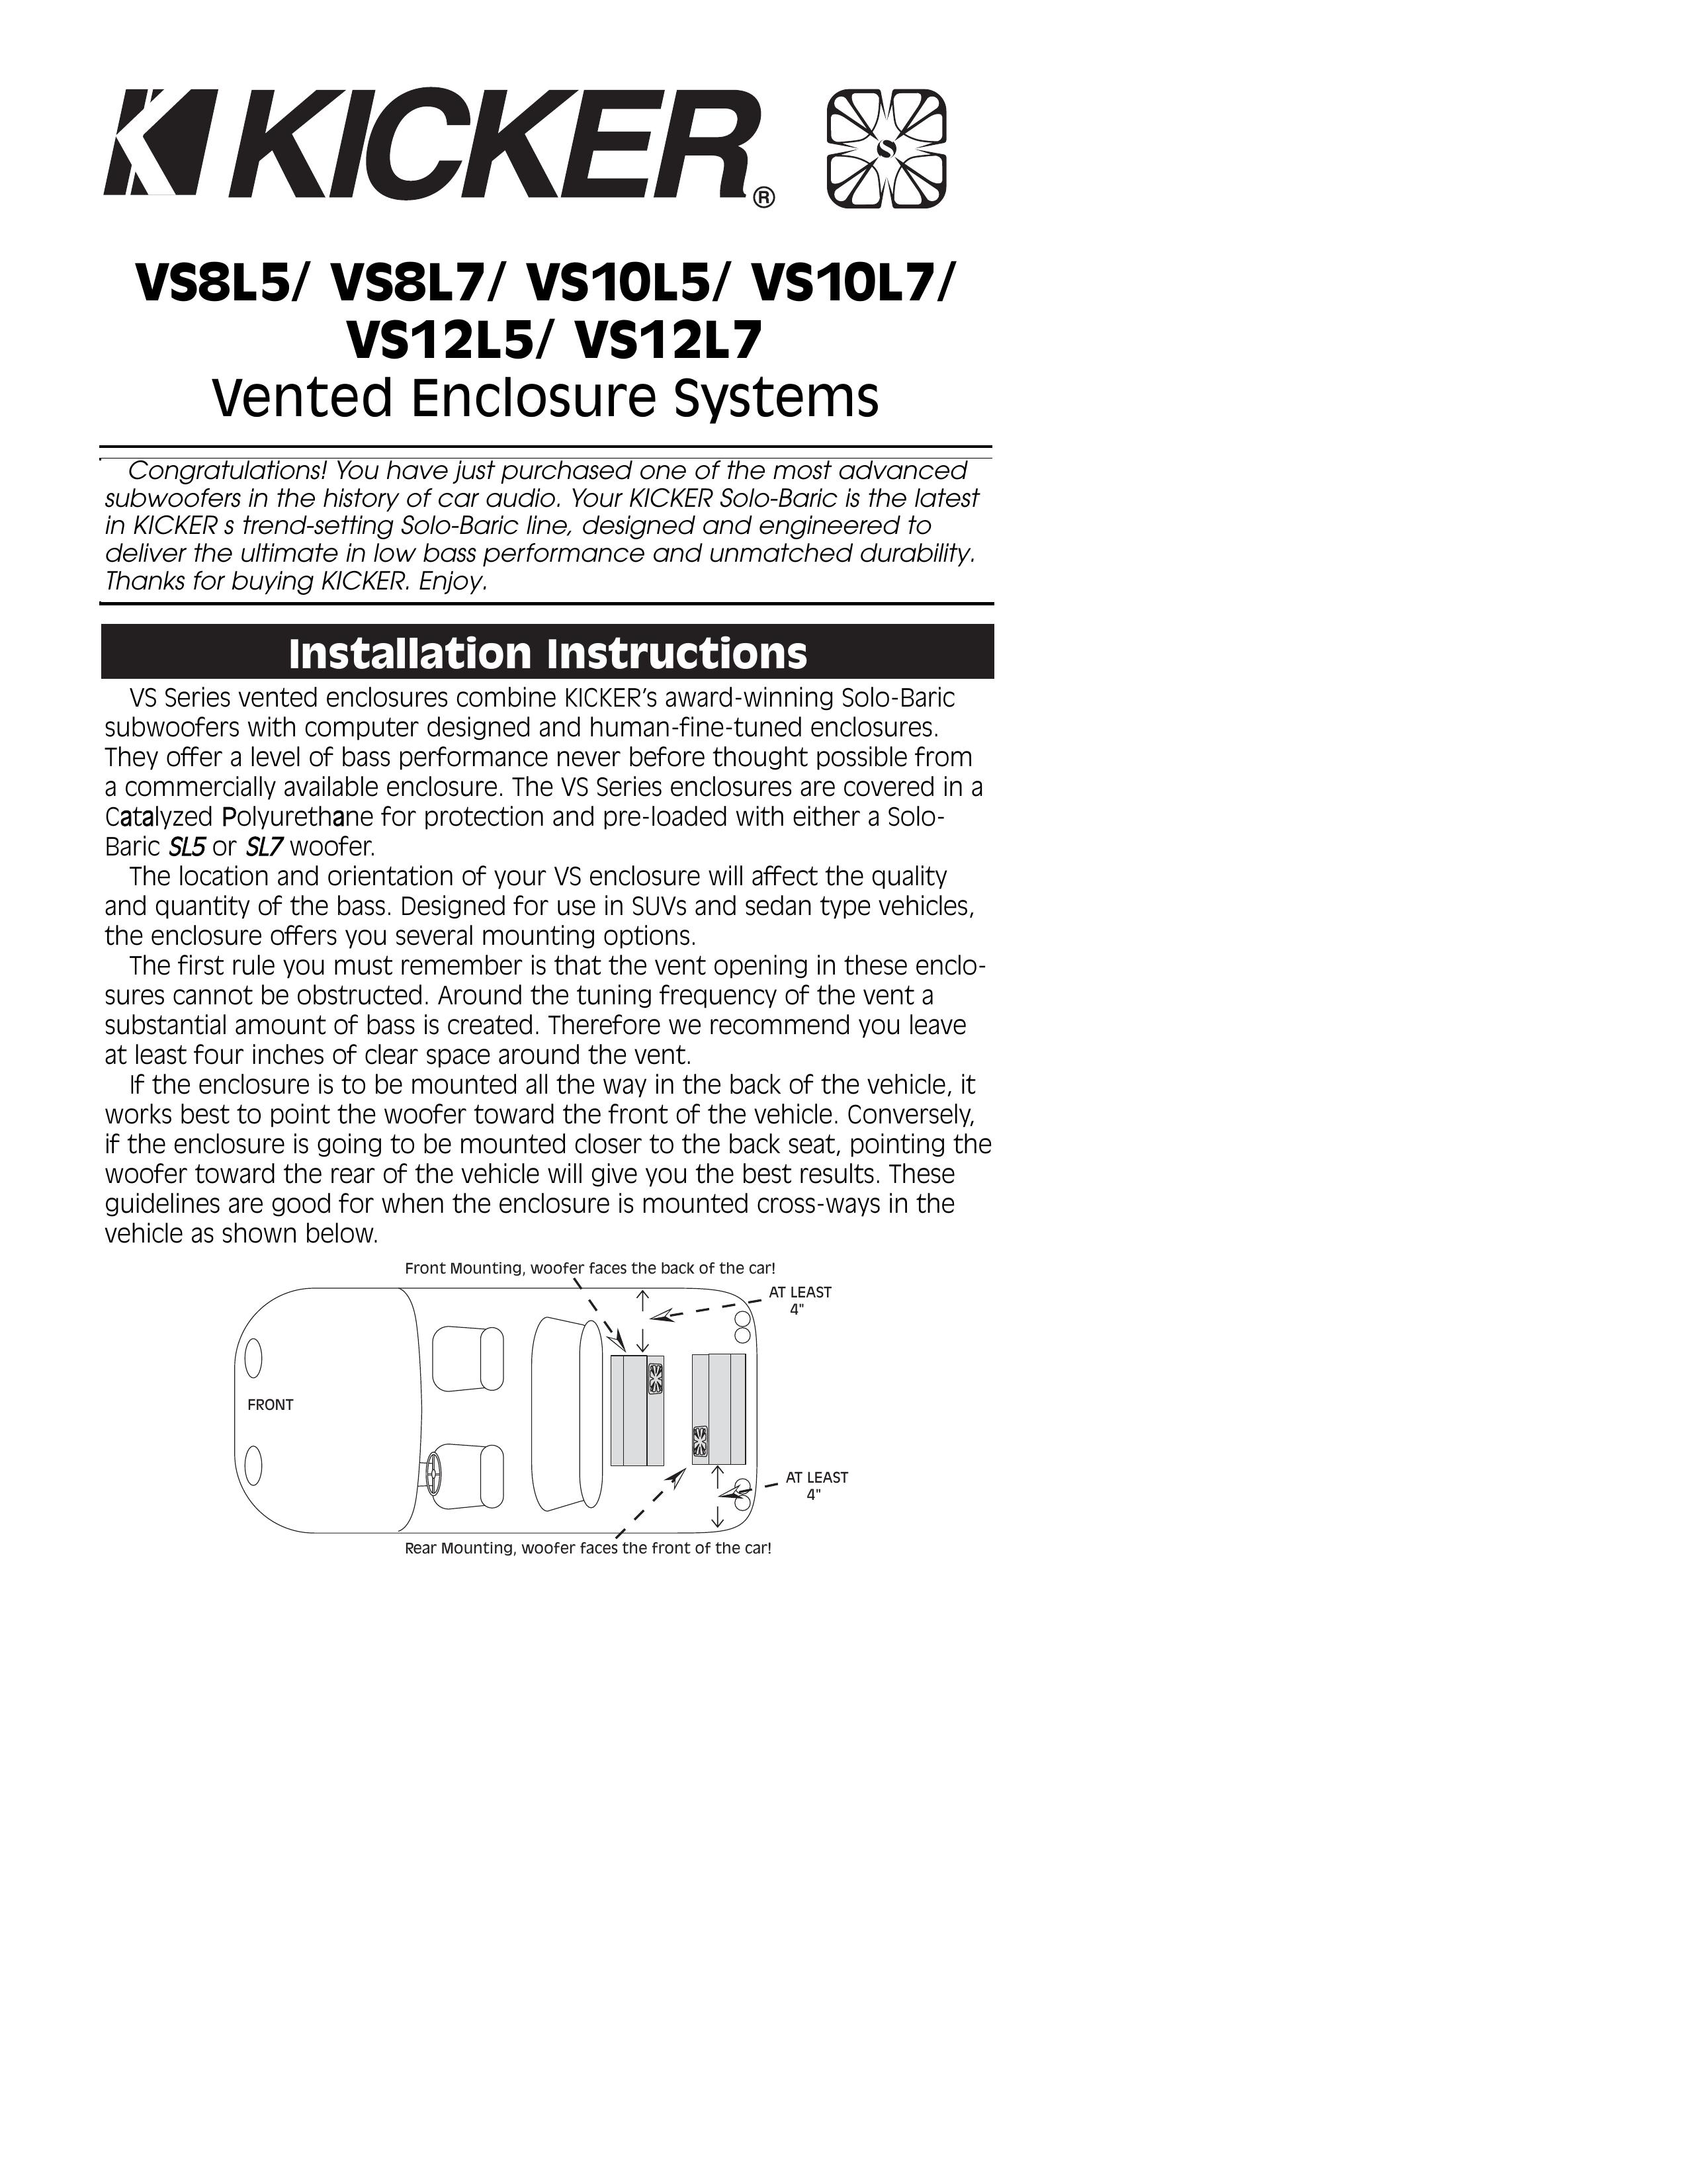 Kicker VS10L7 Refrigerator User Manual